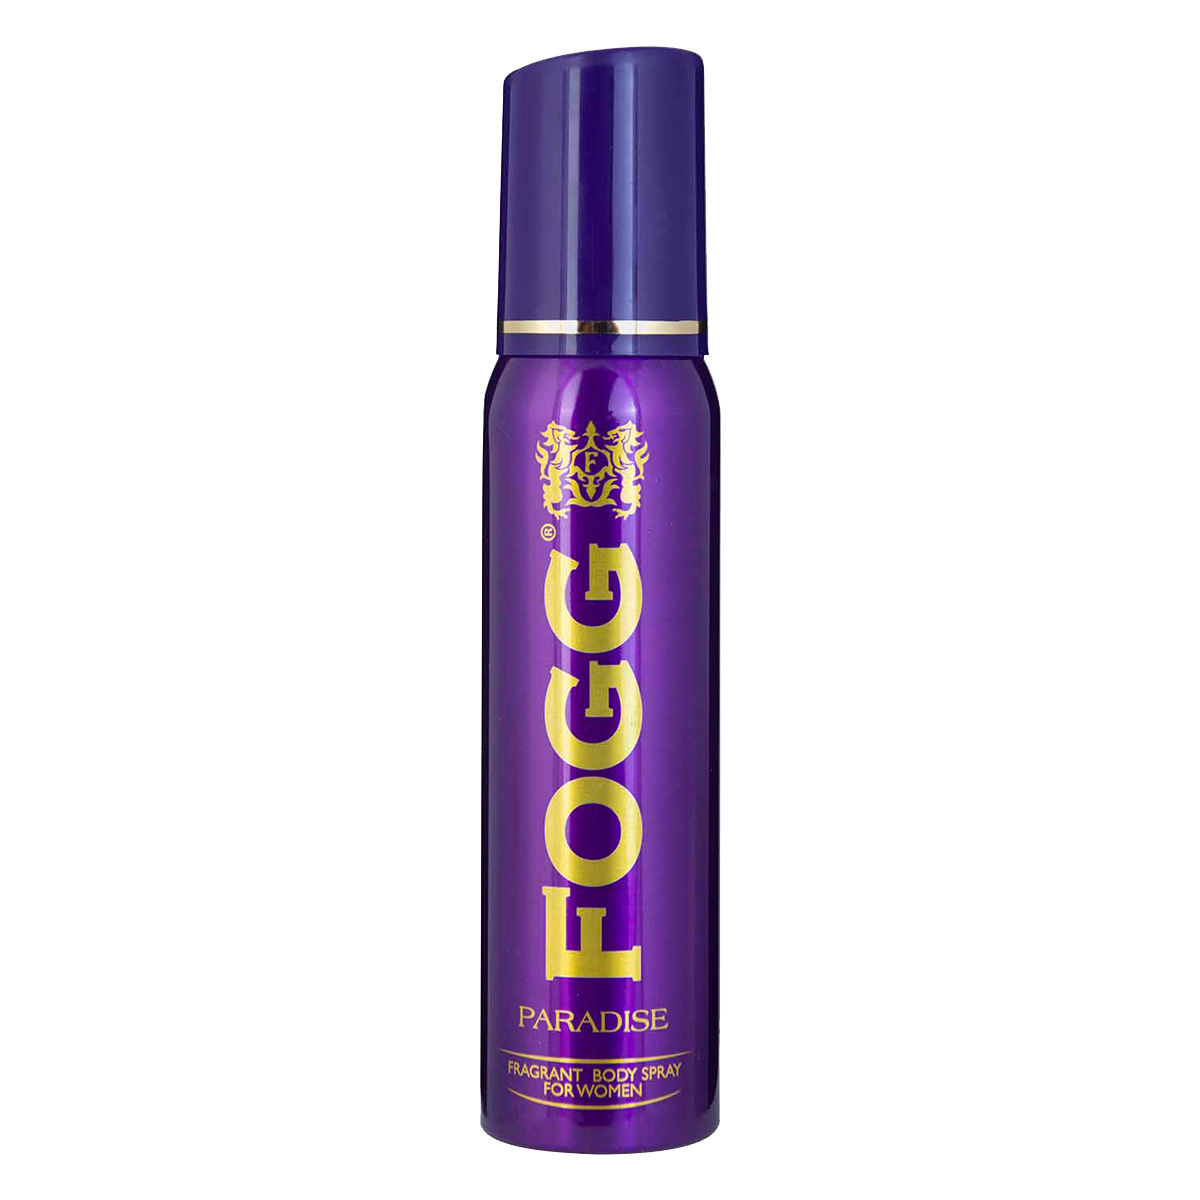 Buy Fogg Paradise Fragrance Body Spray For Women, 120 ml Online